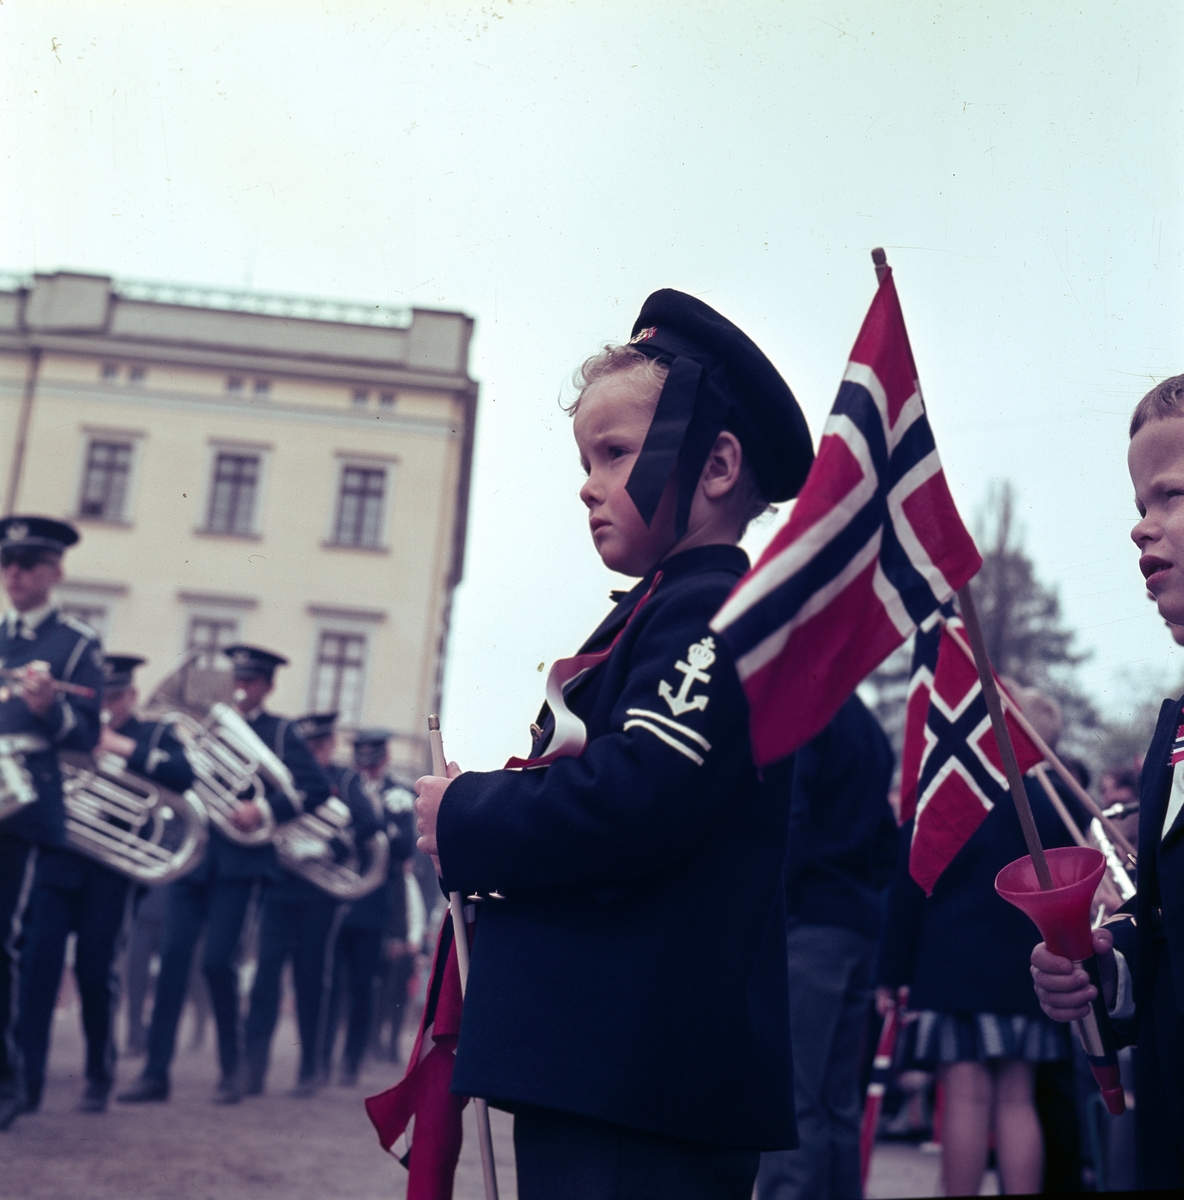 17.maifeiring ved Slottet i forbindelse med Grunnlovsjubileet i 1964. En gutt kledd i matrosdress står i forgunnen med et flagg i hånden.